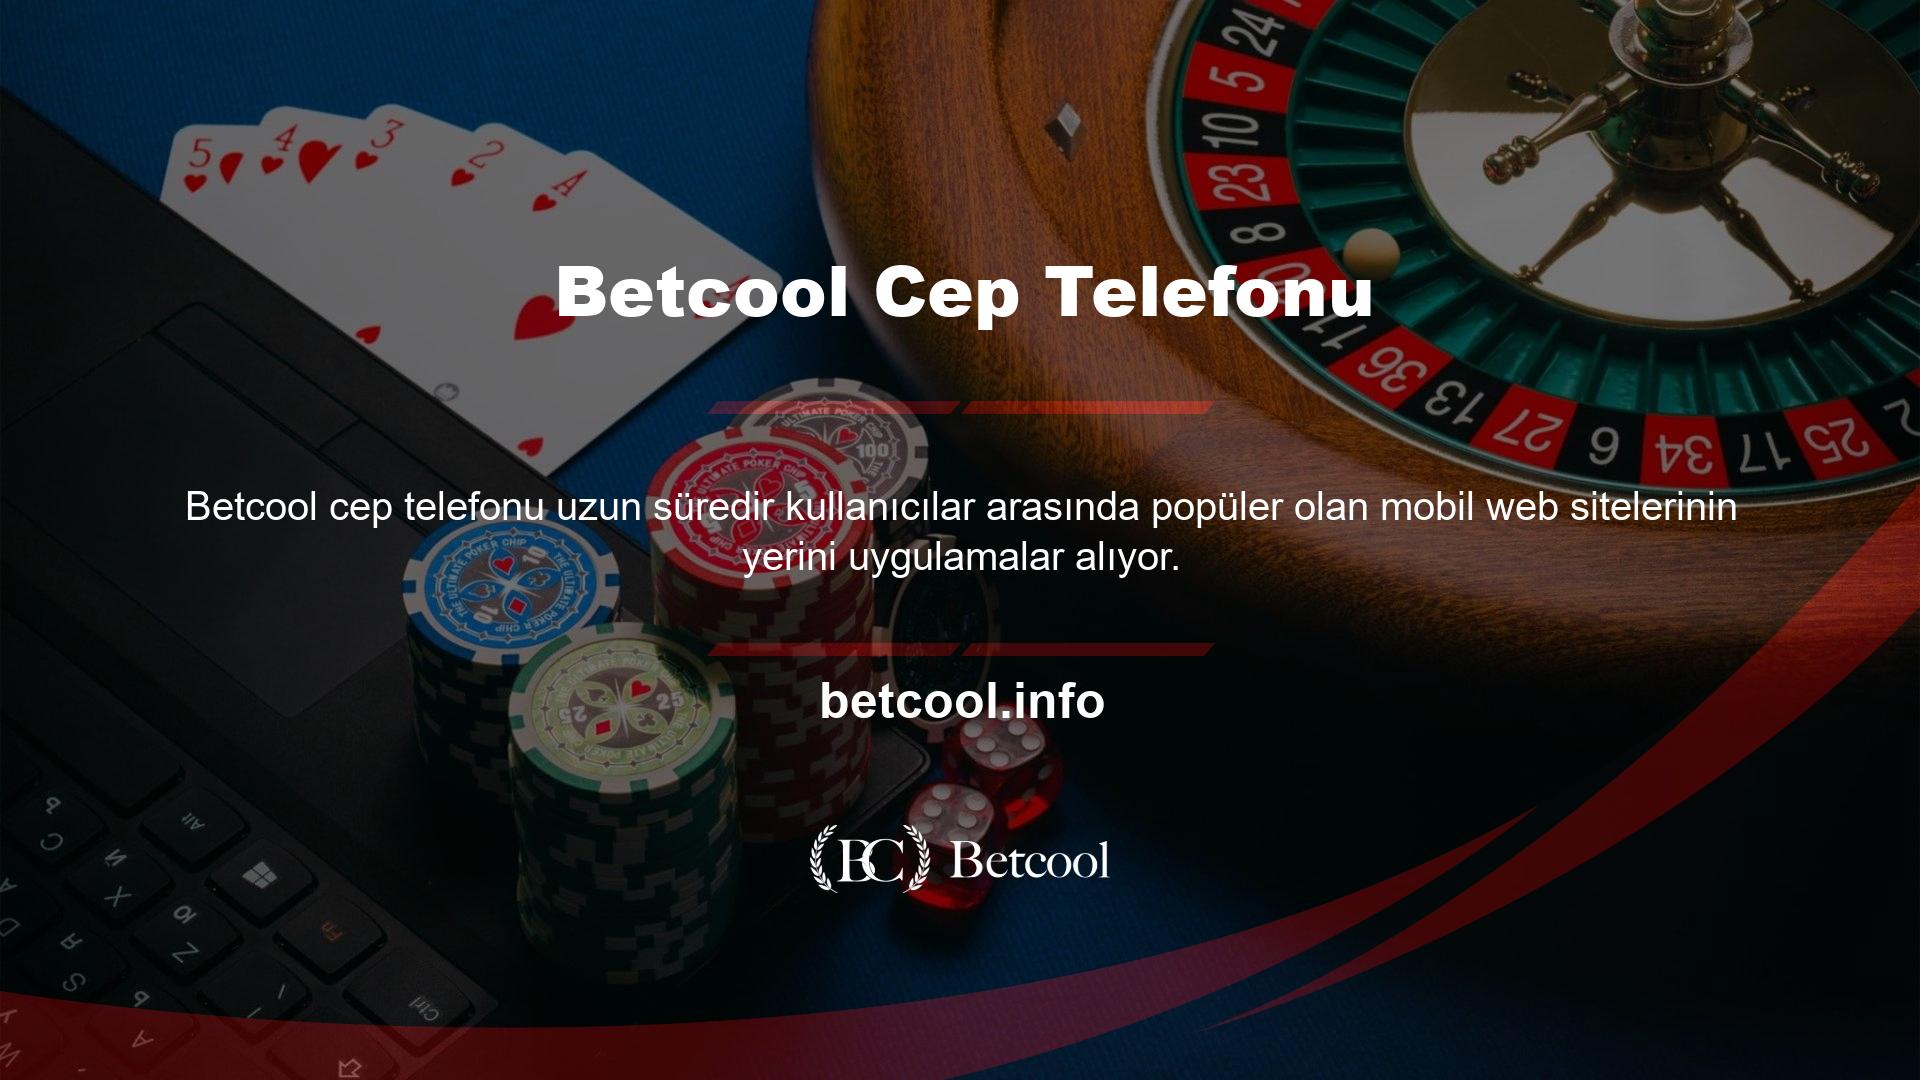 Betcool, iyi hazırlanmış mobil sayfalara sahip bahis sitelerinden biridir